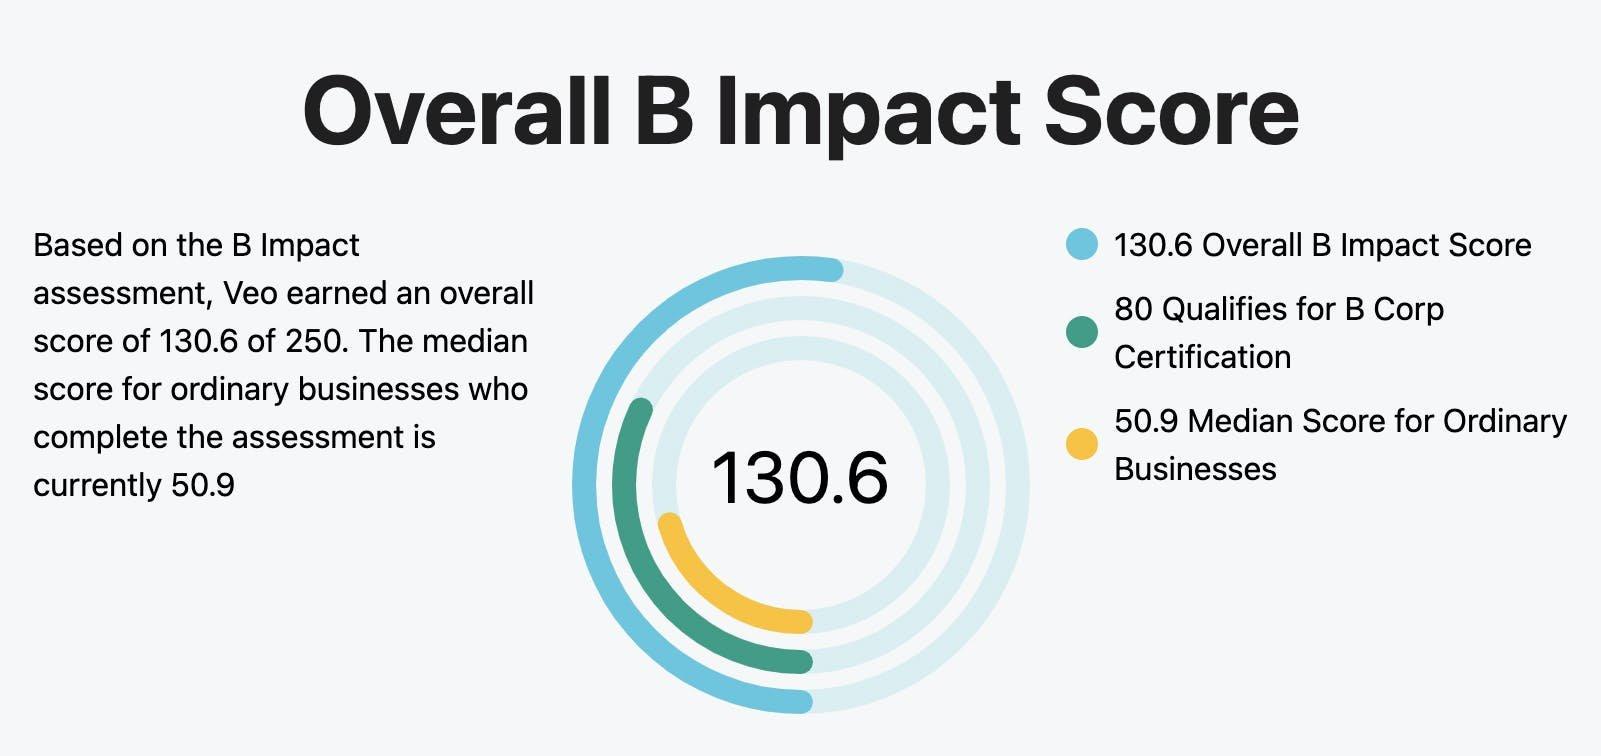 Overall B Impact Score